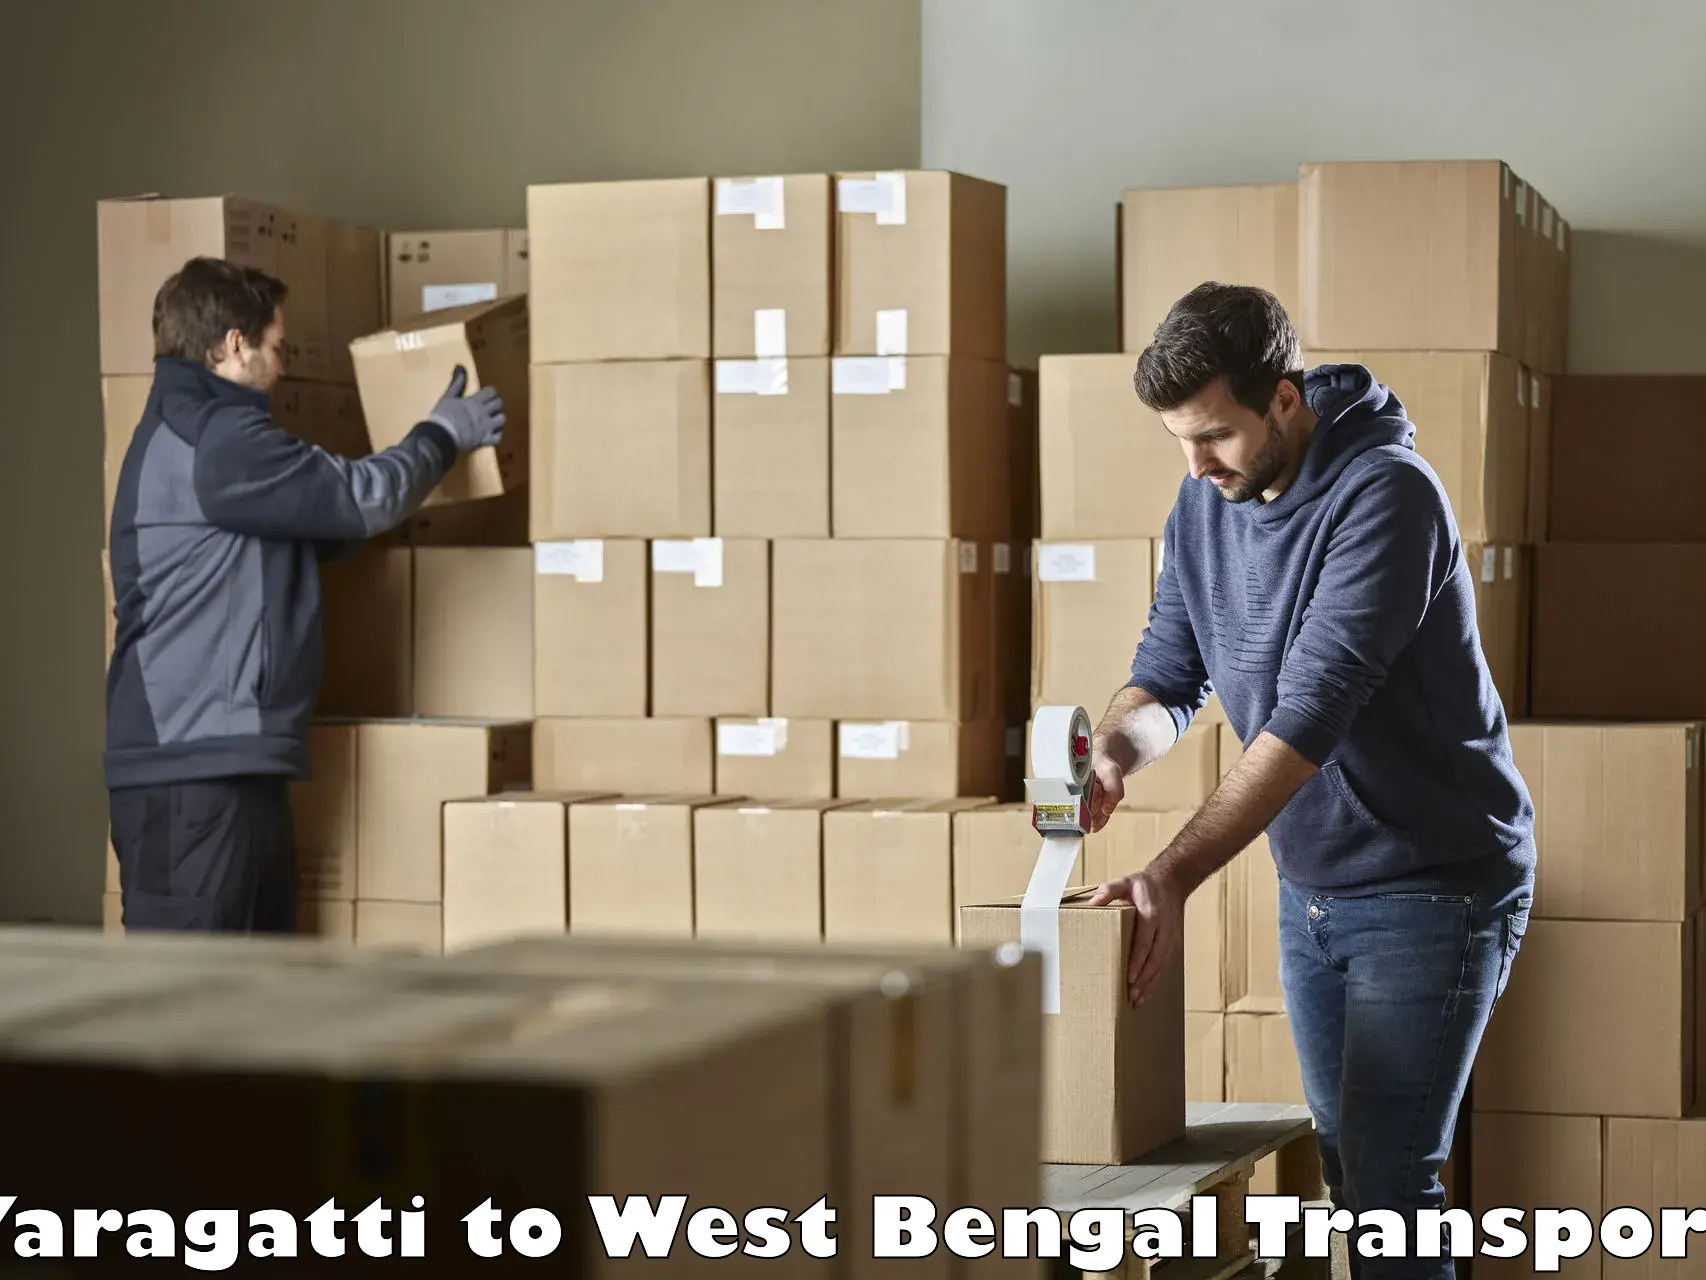 Transport in sharing Yaragatti to Siliguri